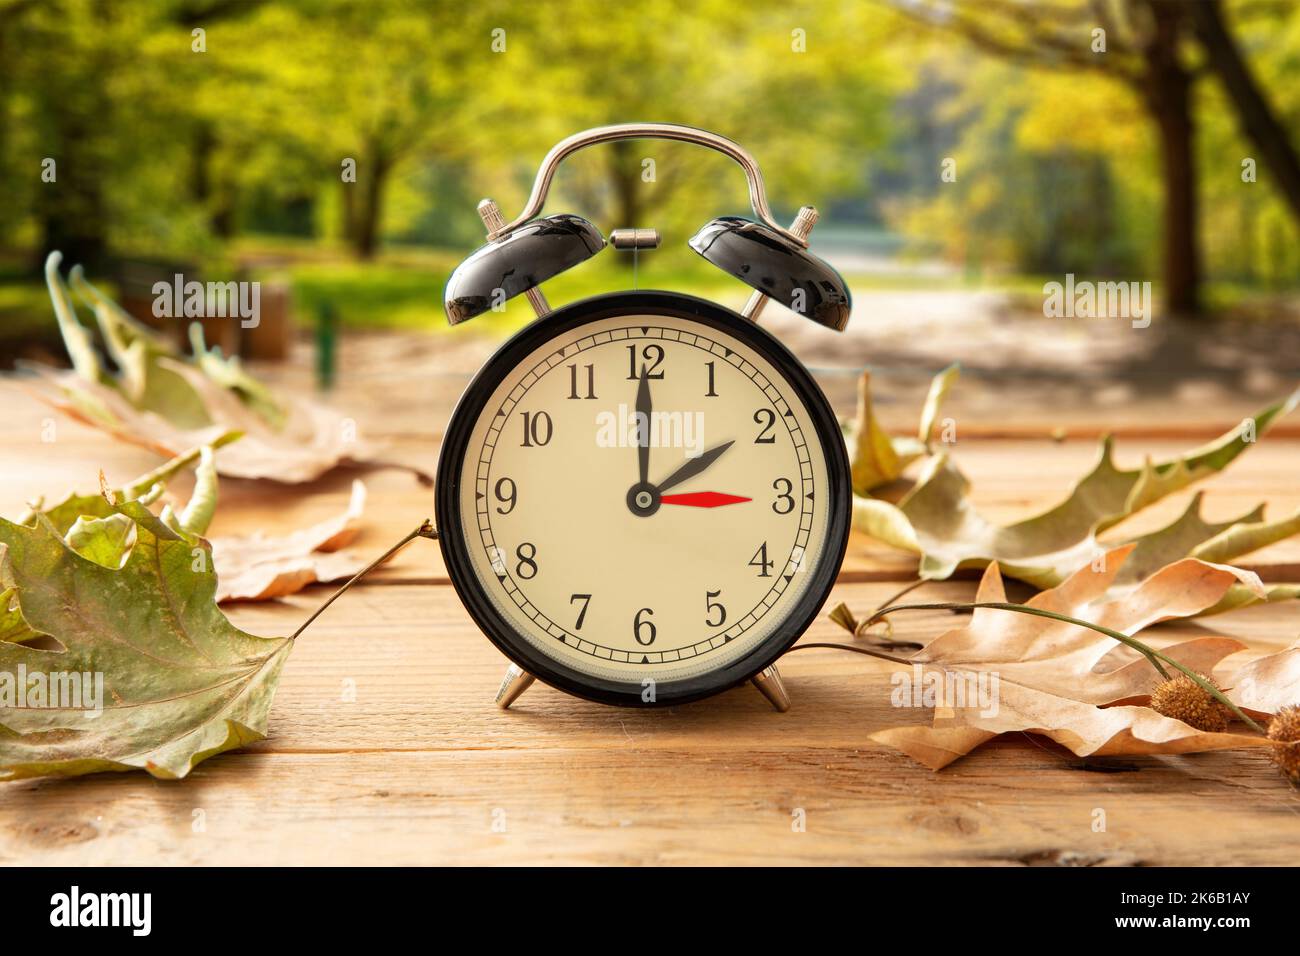 Sommerzeit, Fall eine Stunde zurück. Schwarzer Wecker mit Zeitwechsel auf Holztisch. Herbstbäume und Blätter Hintergrund Stockfoto